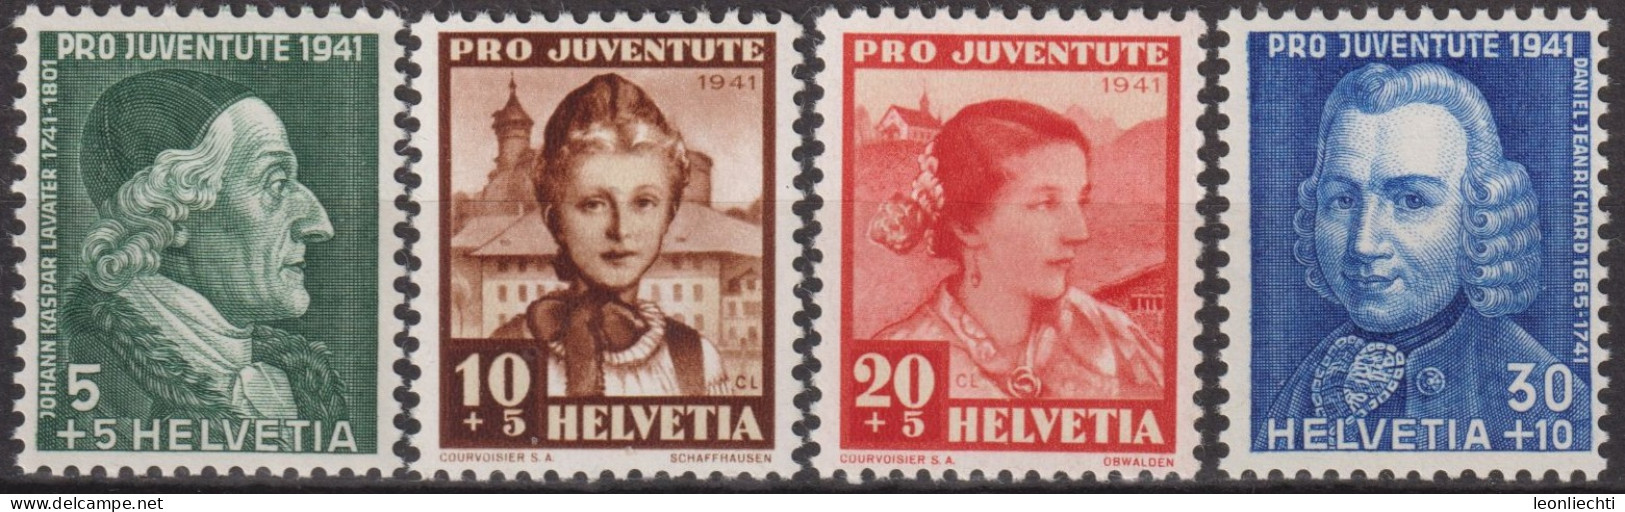 1941 Schweiz Pro Juventute ** Mi:CH 399-402 Yt:CH 371-374, Zum:CH J97-J100, Lavater+Jeanrichards+Trachtenfrauen - Ungebraucht